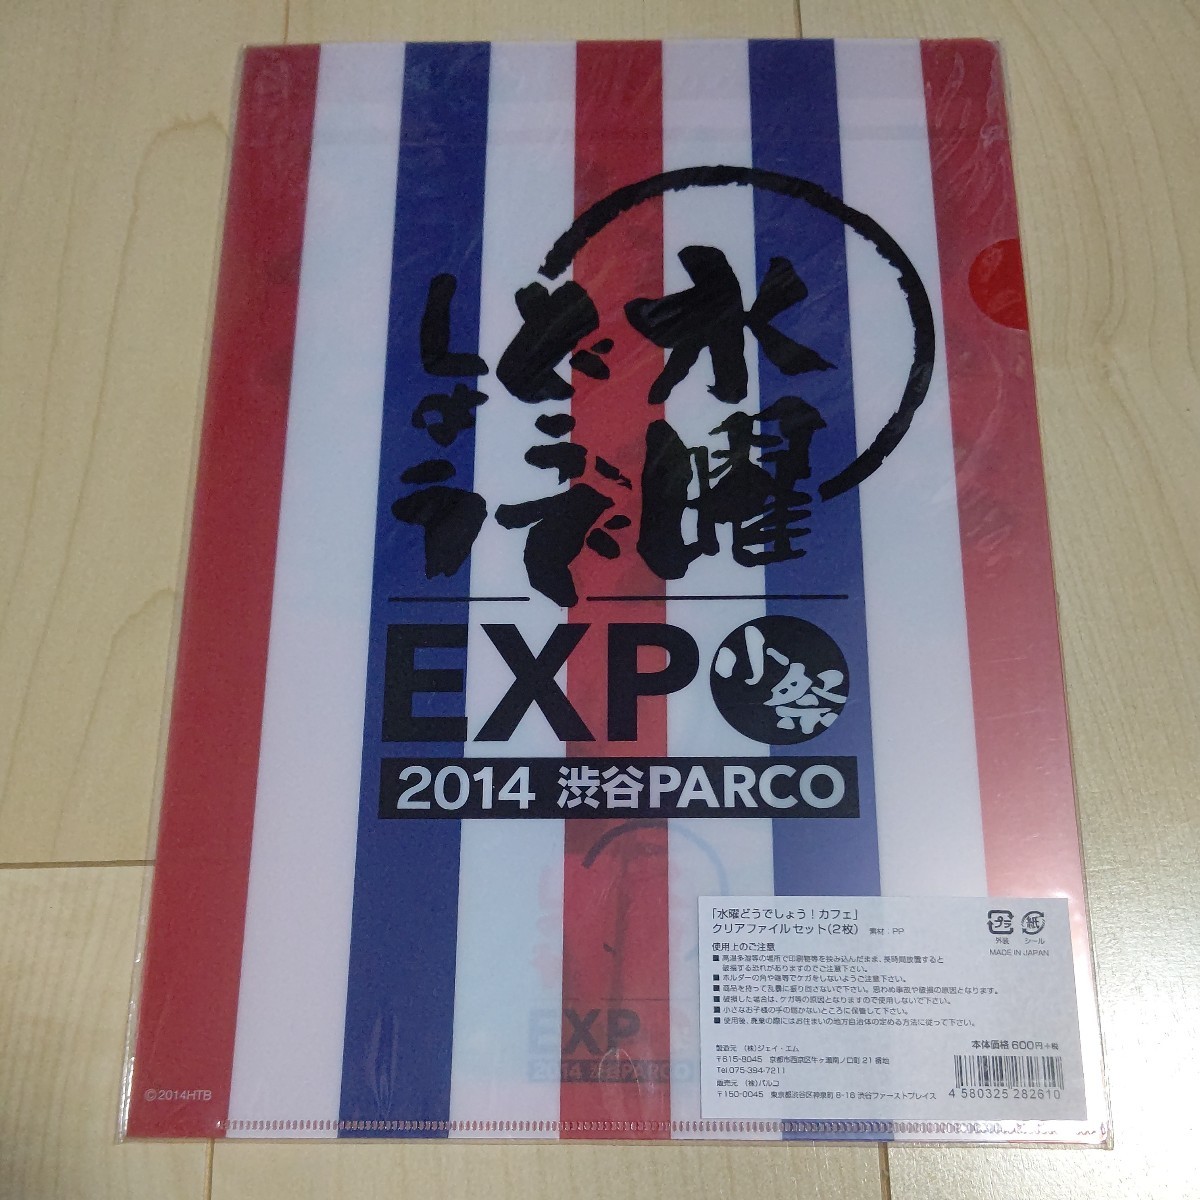 水曜どうでしょう A4クリアファイル (2枚セット) 「水曜どうでしょうカフェ」 限定コラボ 2014渋谷PARCO EXP 小祭の画像2